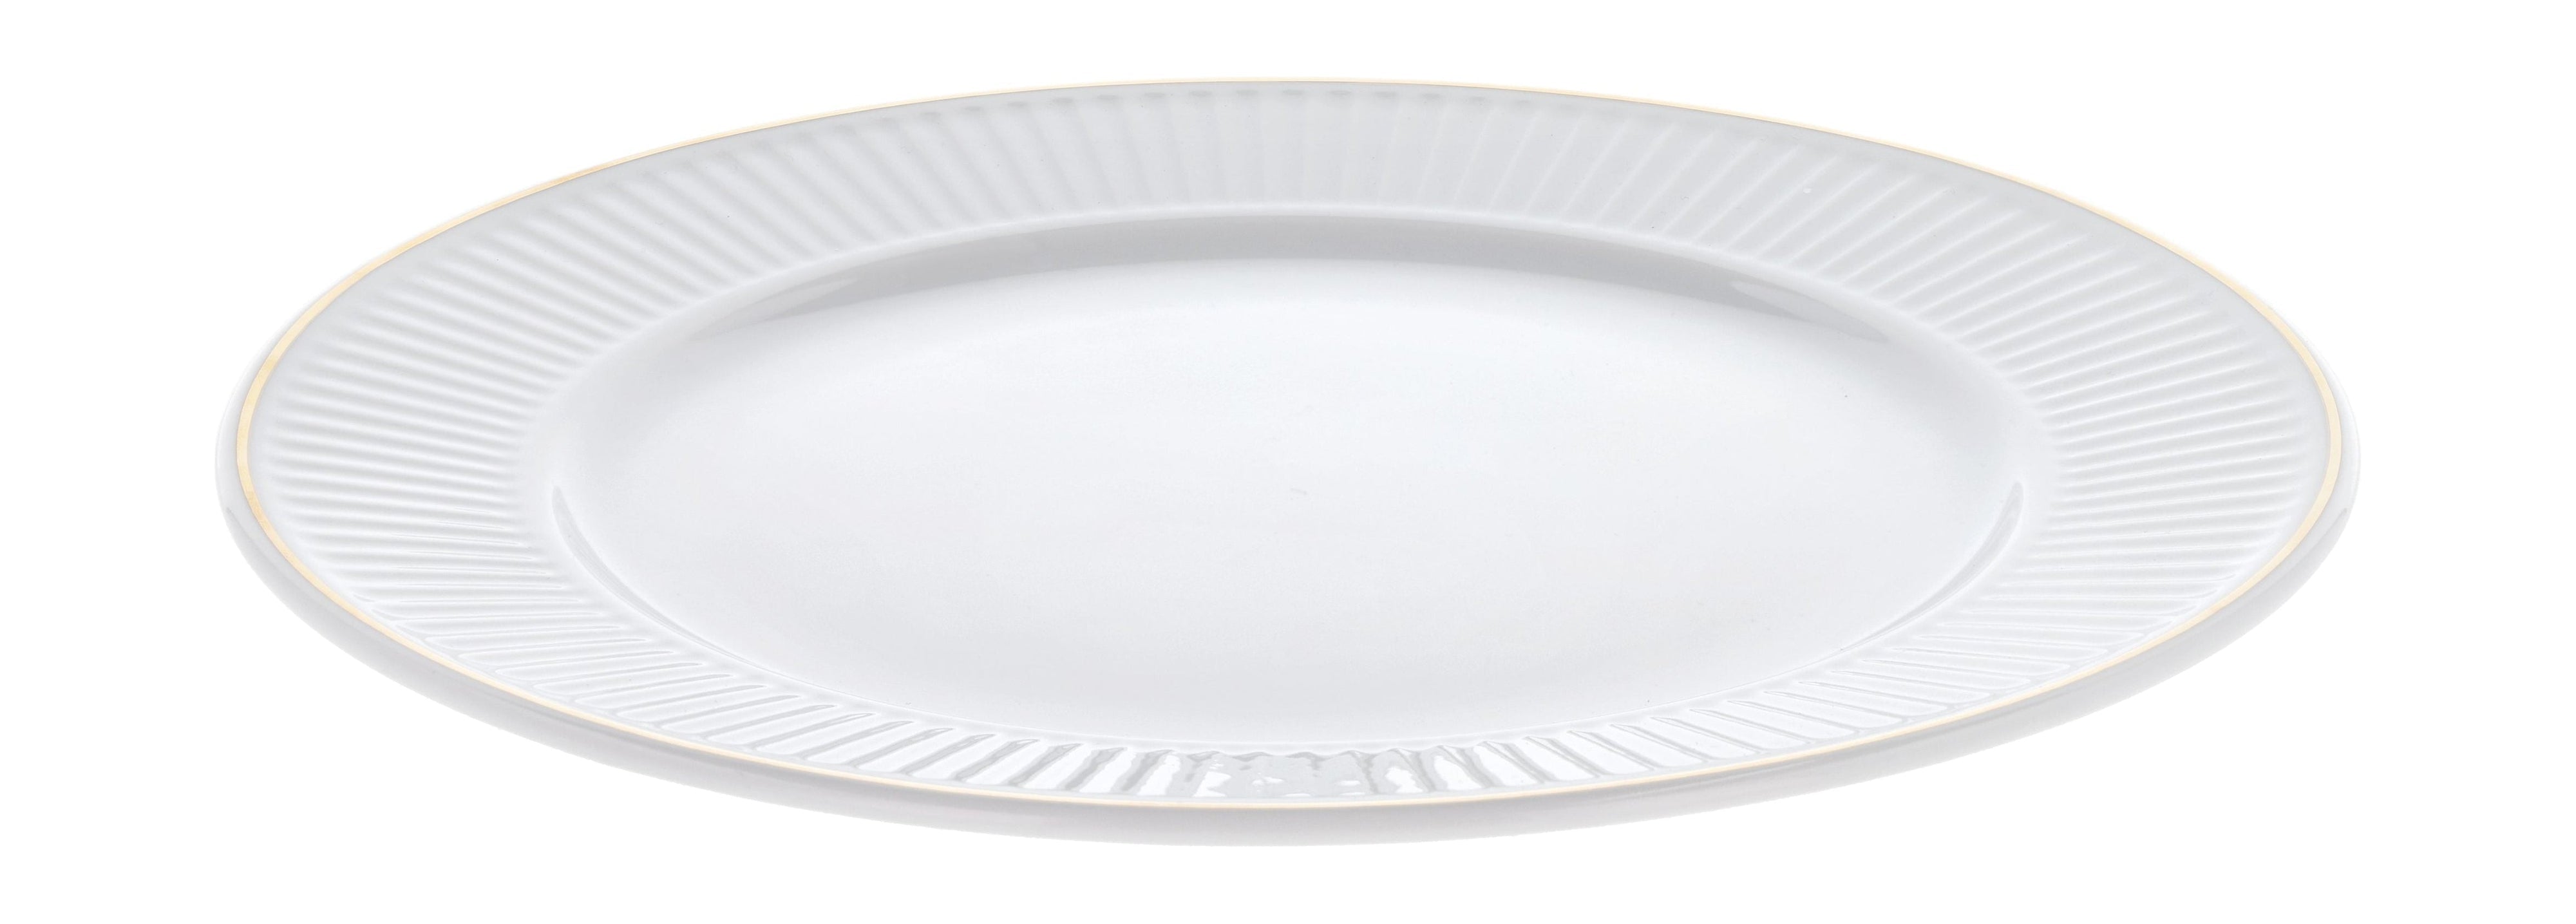 Pillivuyt Plissé Plate White/Matte Gold, Ø22 cm